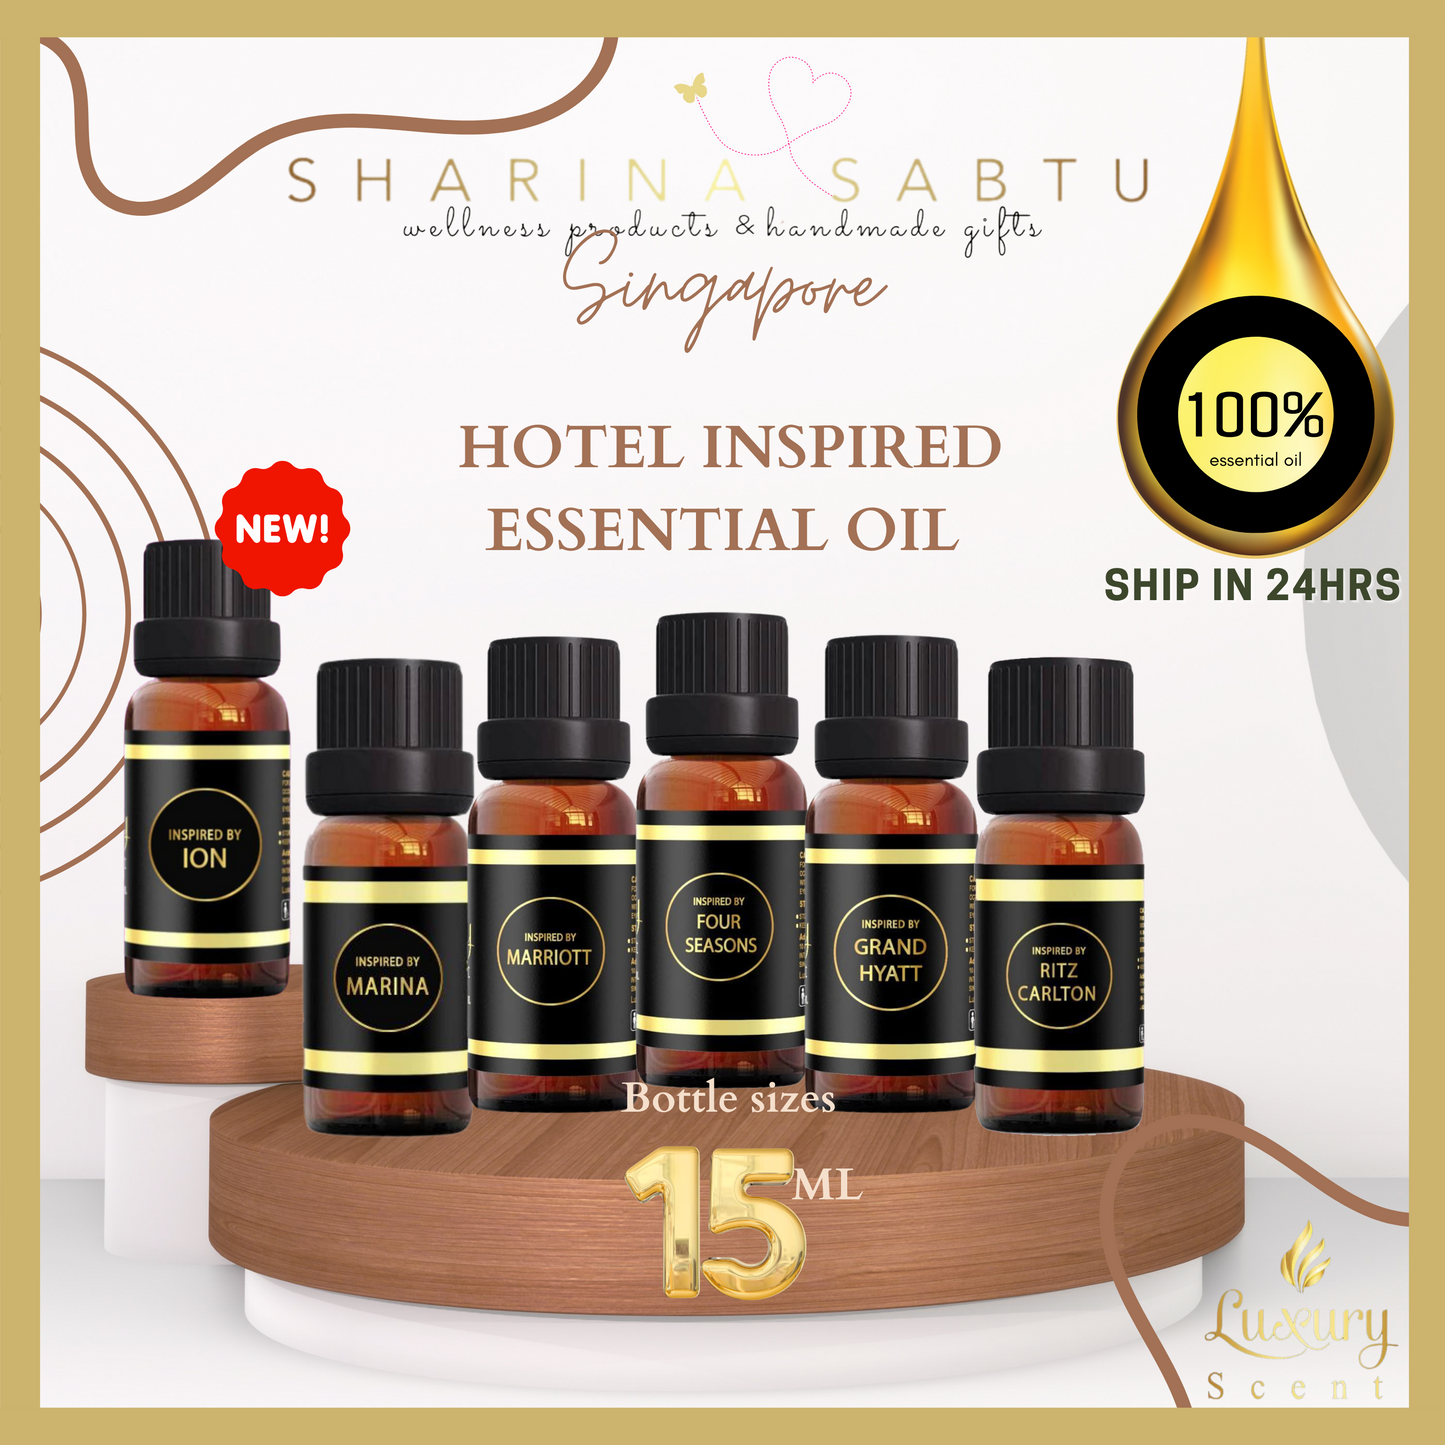 15ml GRAND HYATT Hotel-Inspired Essential Oils